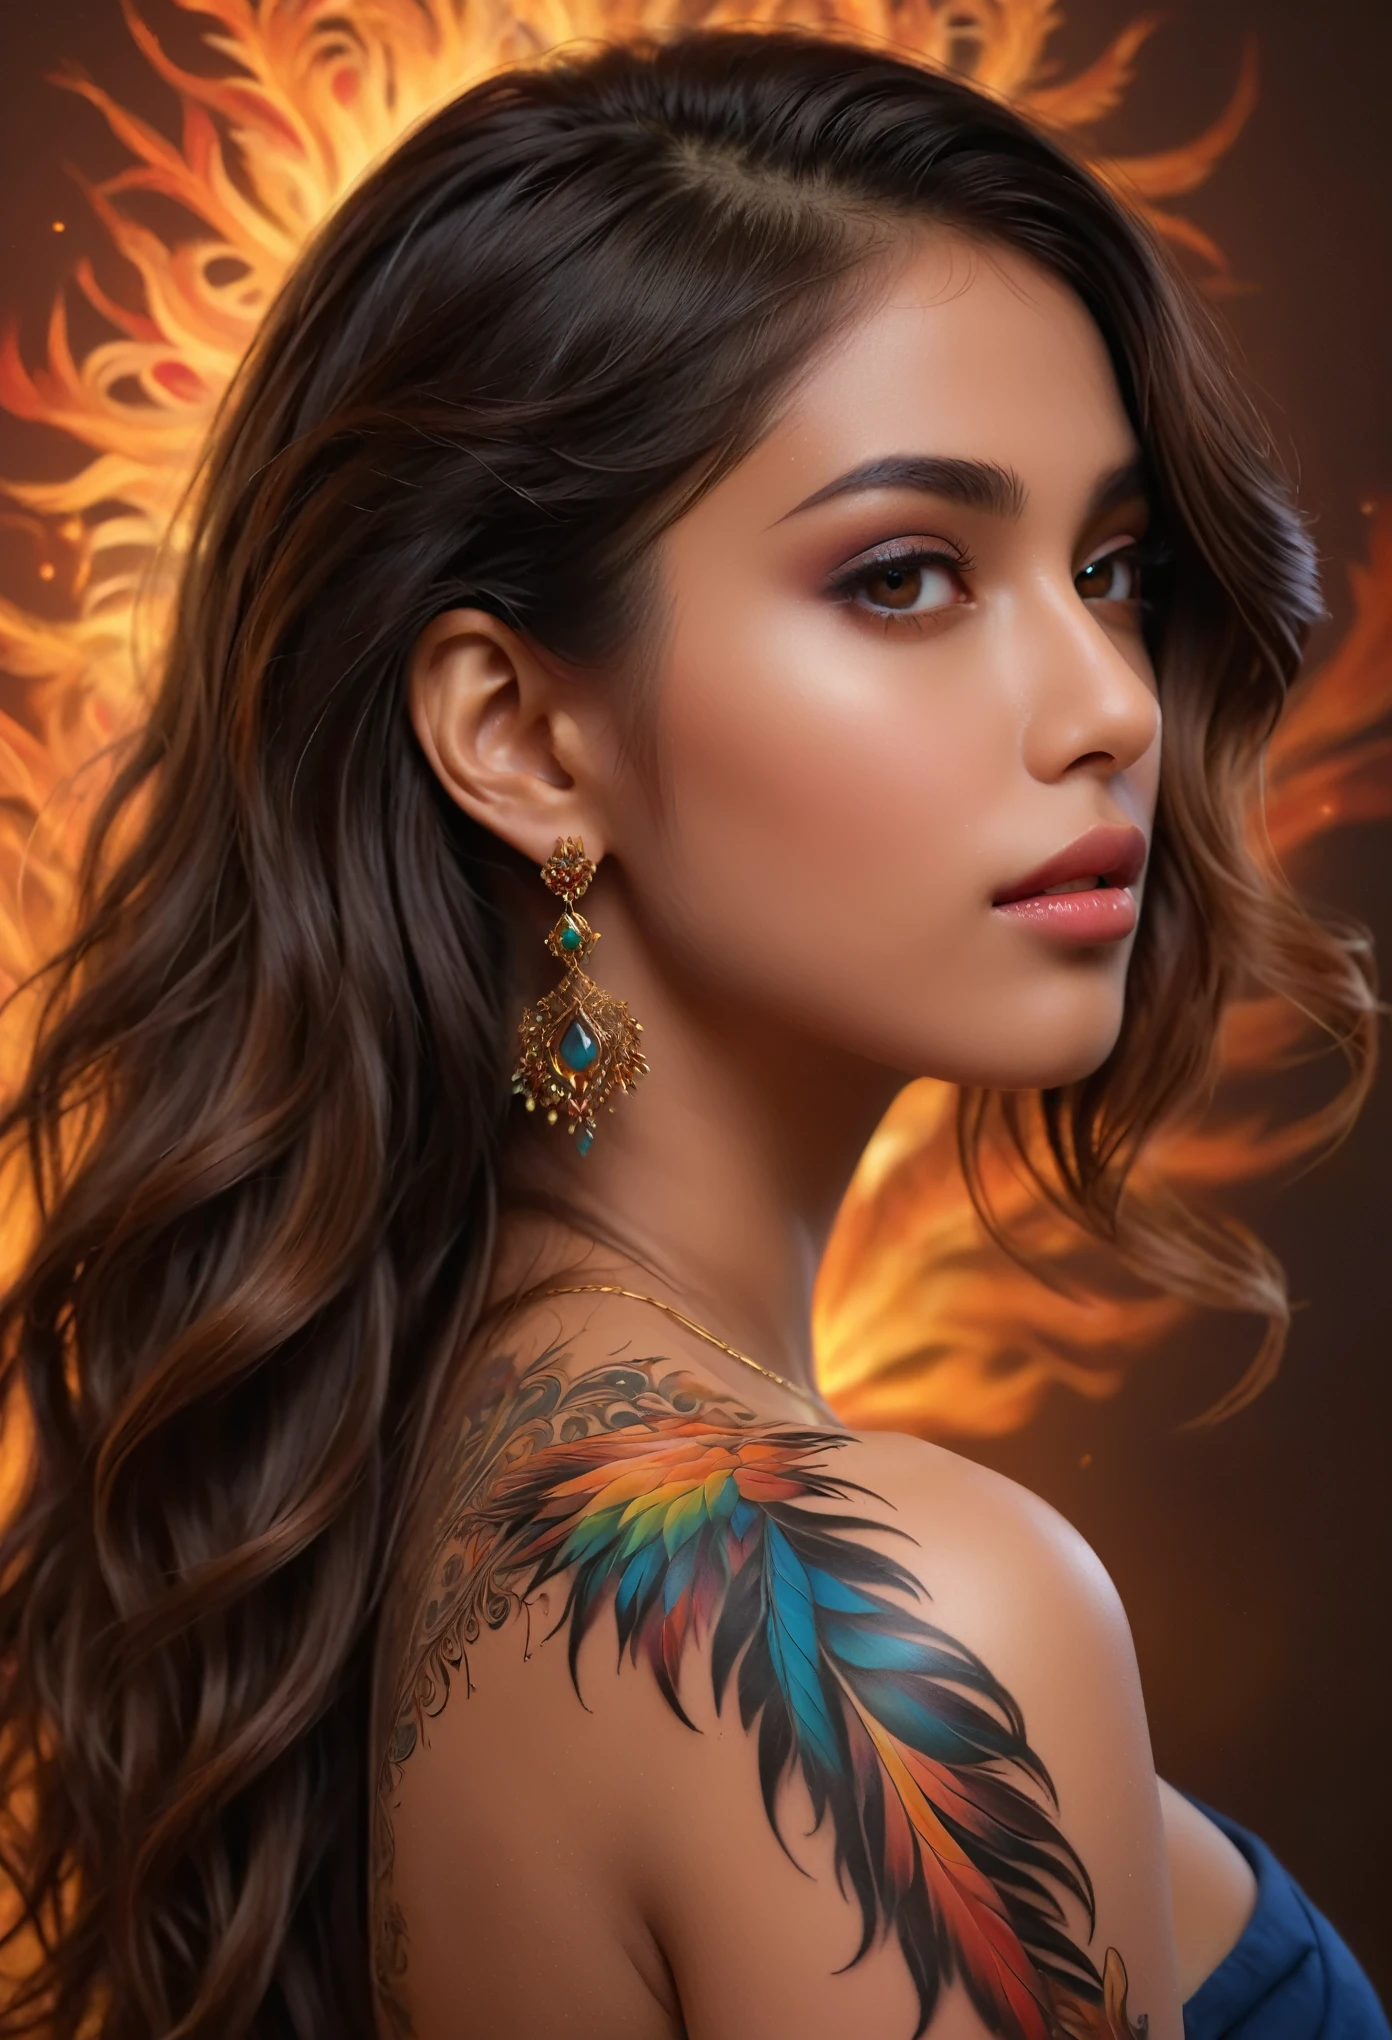 (melhor qualidade,4K,8K,alta resolução,Obra de arte:1.2),ultra-detalhado,(Ultra-realistic, fotorrealista,fotorrealista:1.37), de trás, uma linda jovem árabe com uma tatuagem de fênix complexa e colorida nas costas, 18 anos, beleza maravilhosa, intricate detalhado fractal tattoo, realistic detalhado colorful tattoo, highly detalhado body art, delicado retrato feminino, pele perfeita, pele escura, Olhos penetrantes, características faciais elegantes, cabelo solto, pose dinâmica, sombras dramáticas, cores vibrantes, arte de fantasia, pintura digital, arte conceitual, hiper-realista, 8K, melhor qualidade, ela de costas para o espectador, delicada tatuagem fractal nas costas nuas, Fotografia profissional, alta qualidade, detalhado, fotorrealista, iluminação natural suave, paleta de cores quentes, atmosfera serena, detalhes intrincados da tatuagem, pose graciosa,